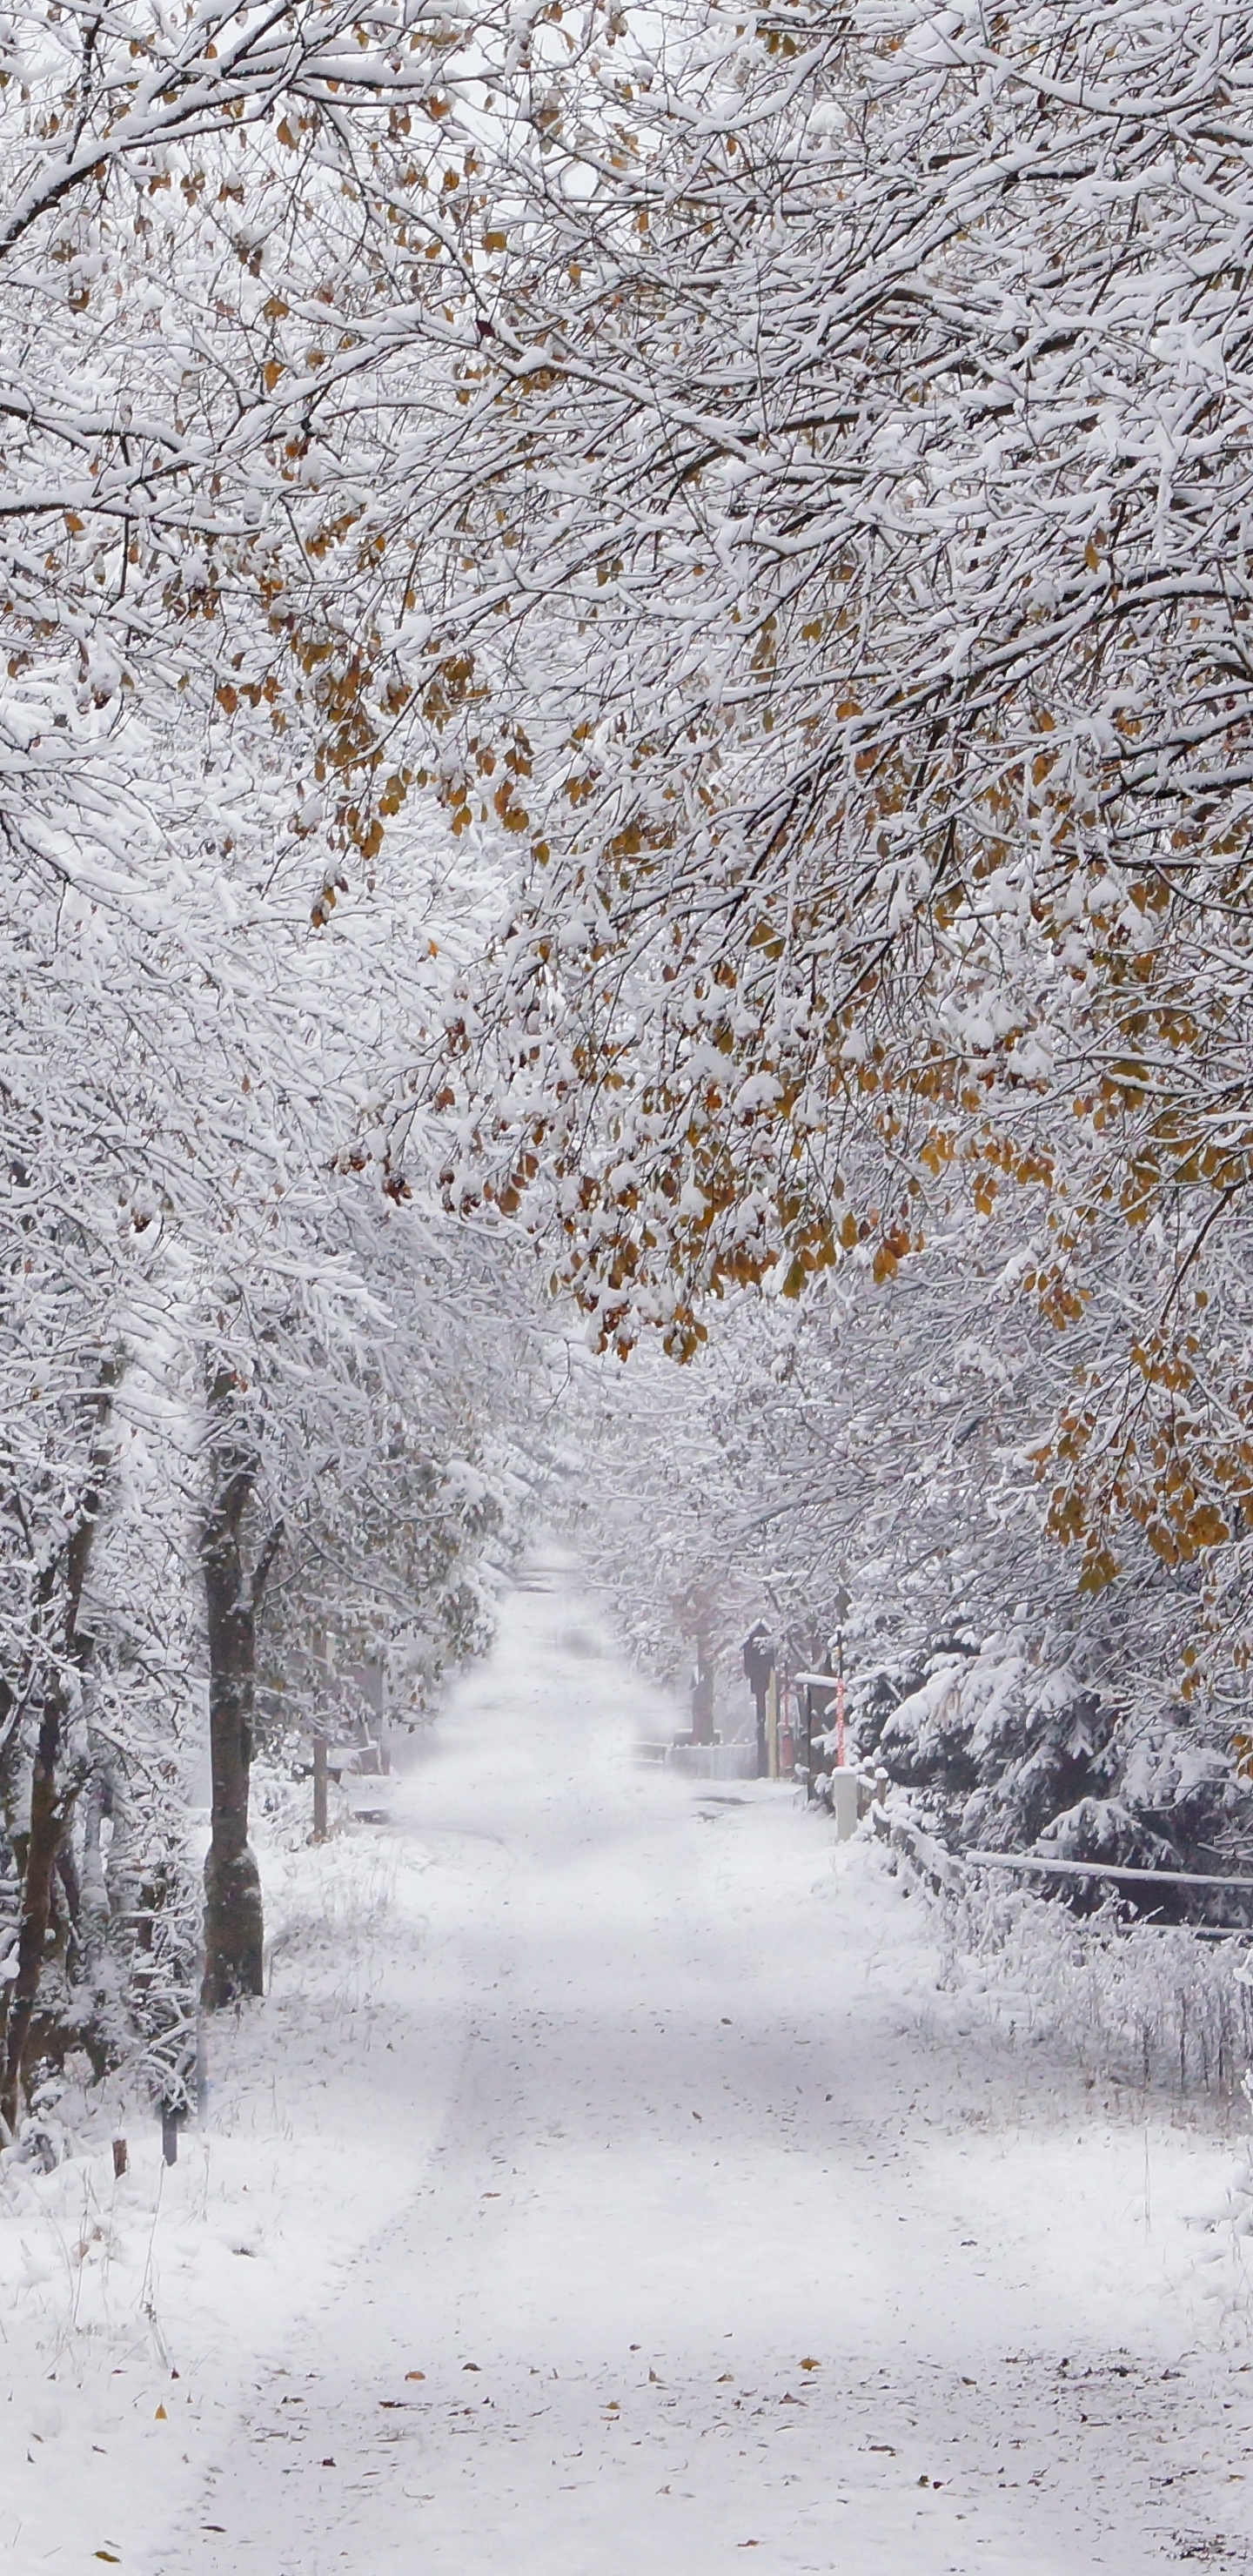 Скачать картинку Зима, Природа, Снег, Дорога, Дерево, Фотографии в телефон бесплатно.